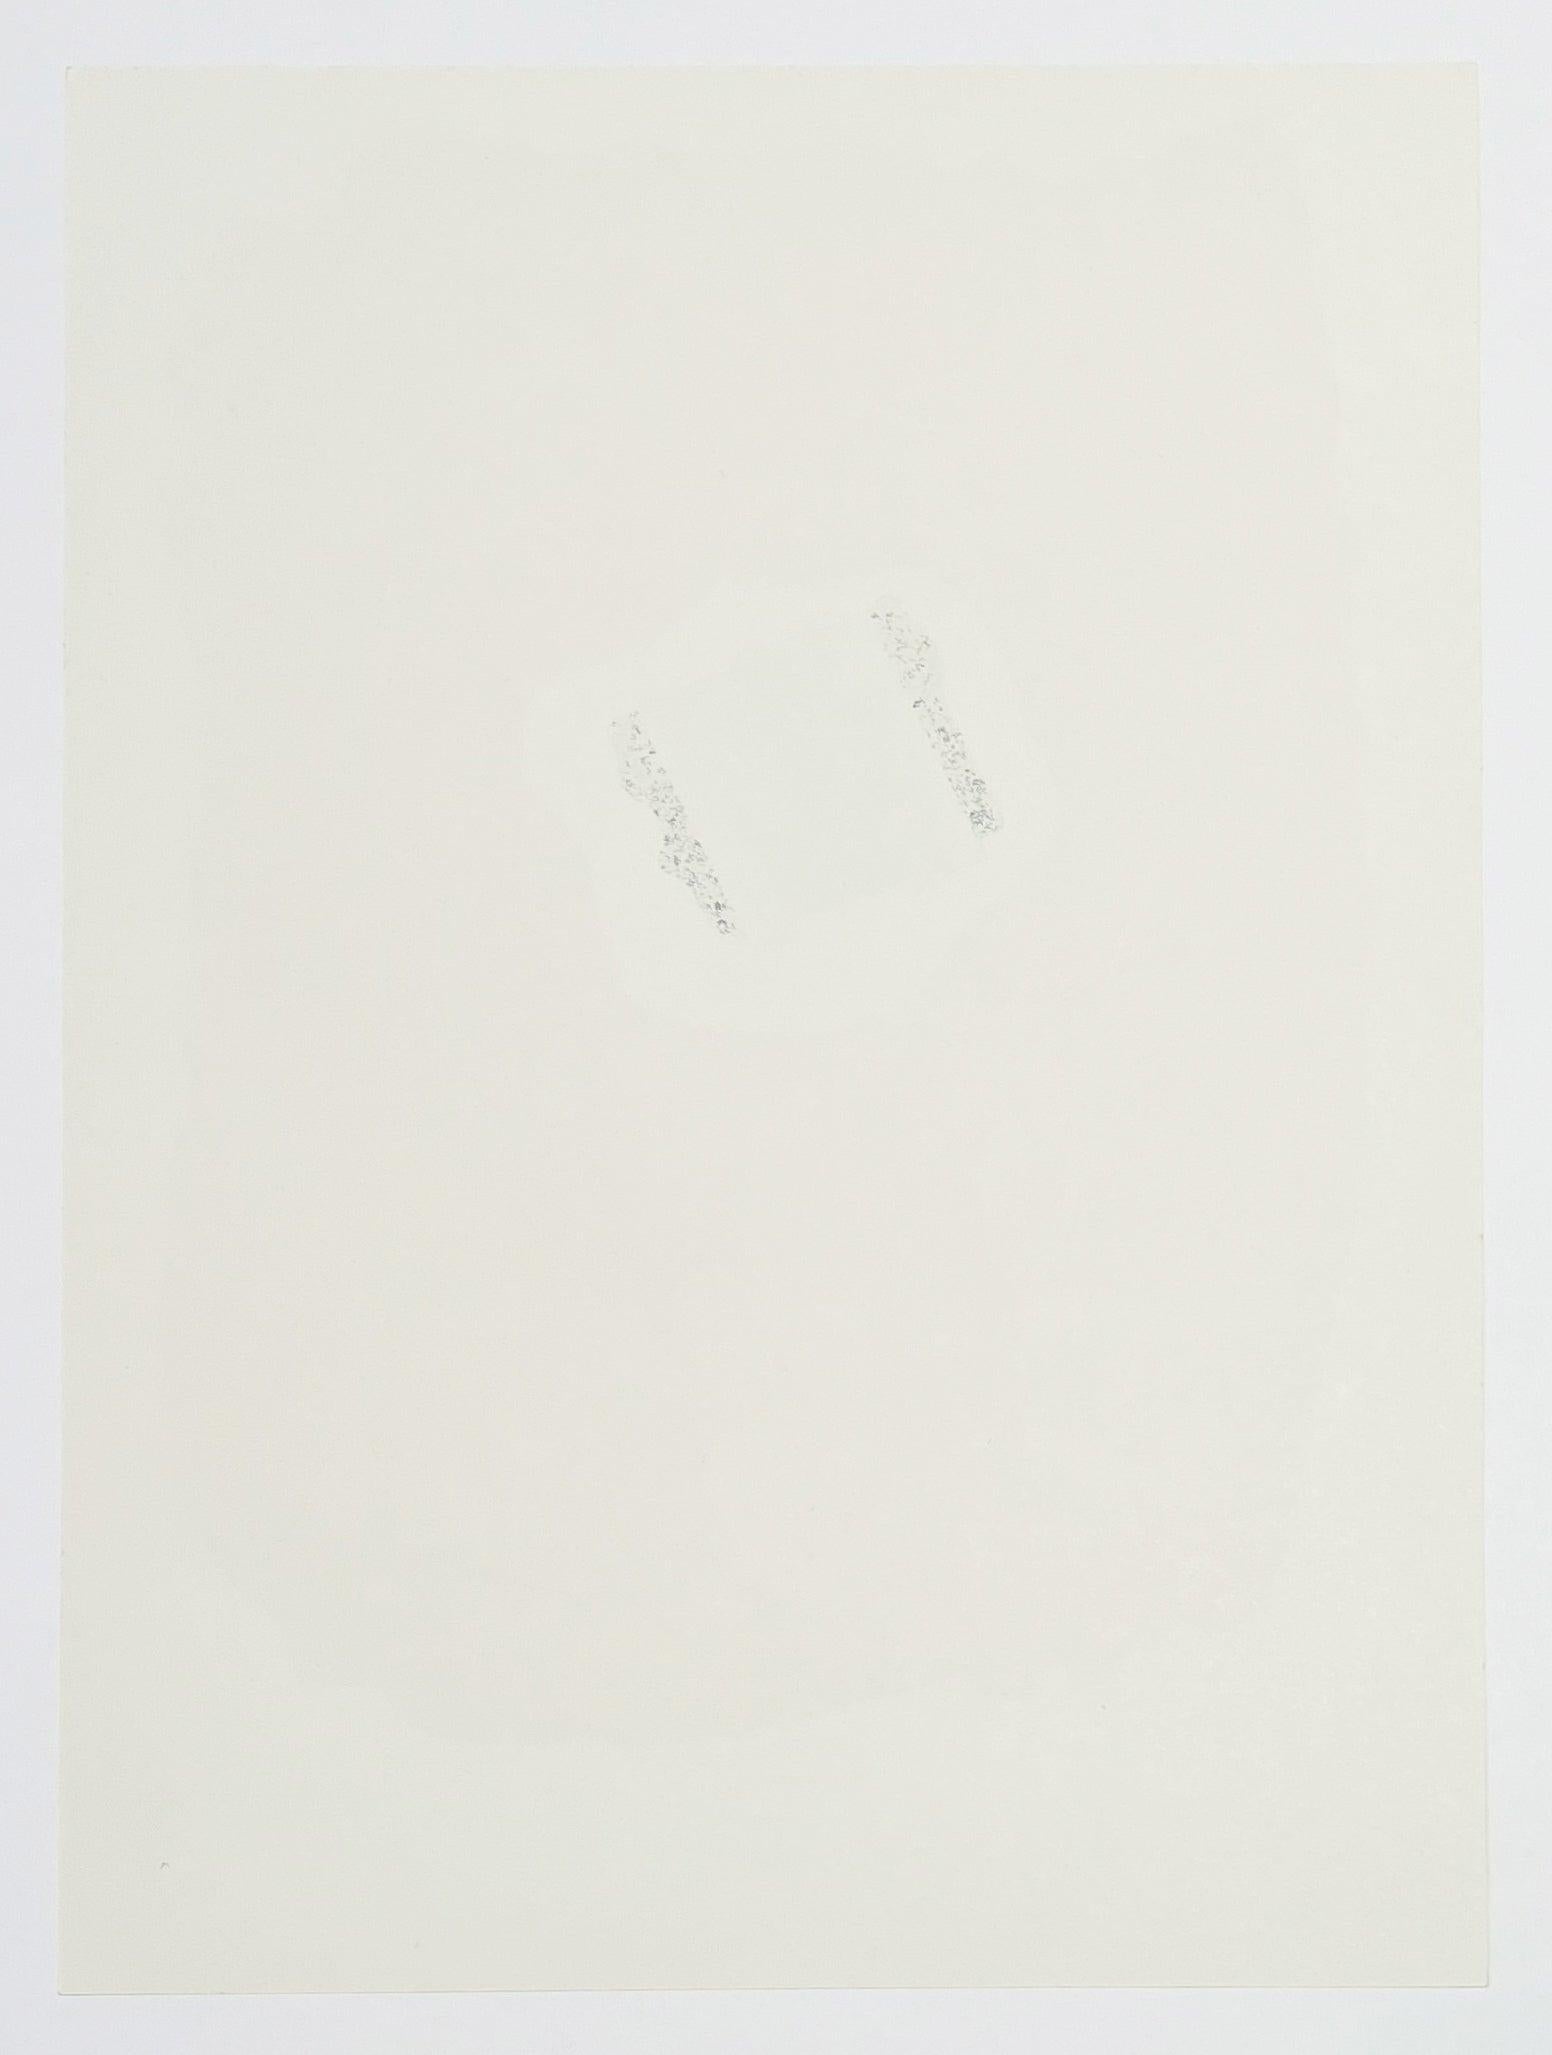 Artistics : Robert Motherwell
Titre : Tricolore (du XXe Siecle)
Médium : Lithographie
Date : 1973
Édition : Non numéroté
Taille du cadre : 18 1/2